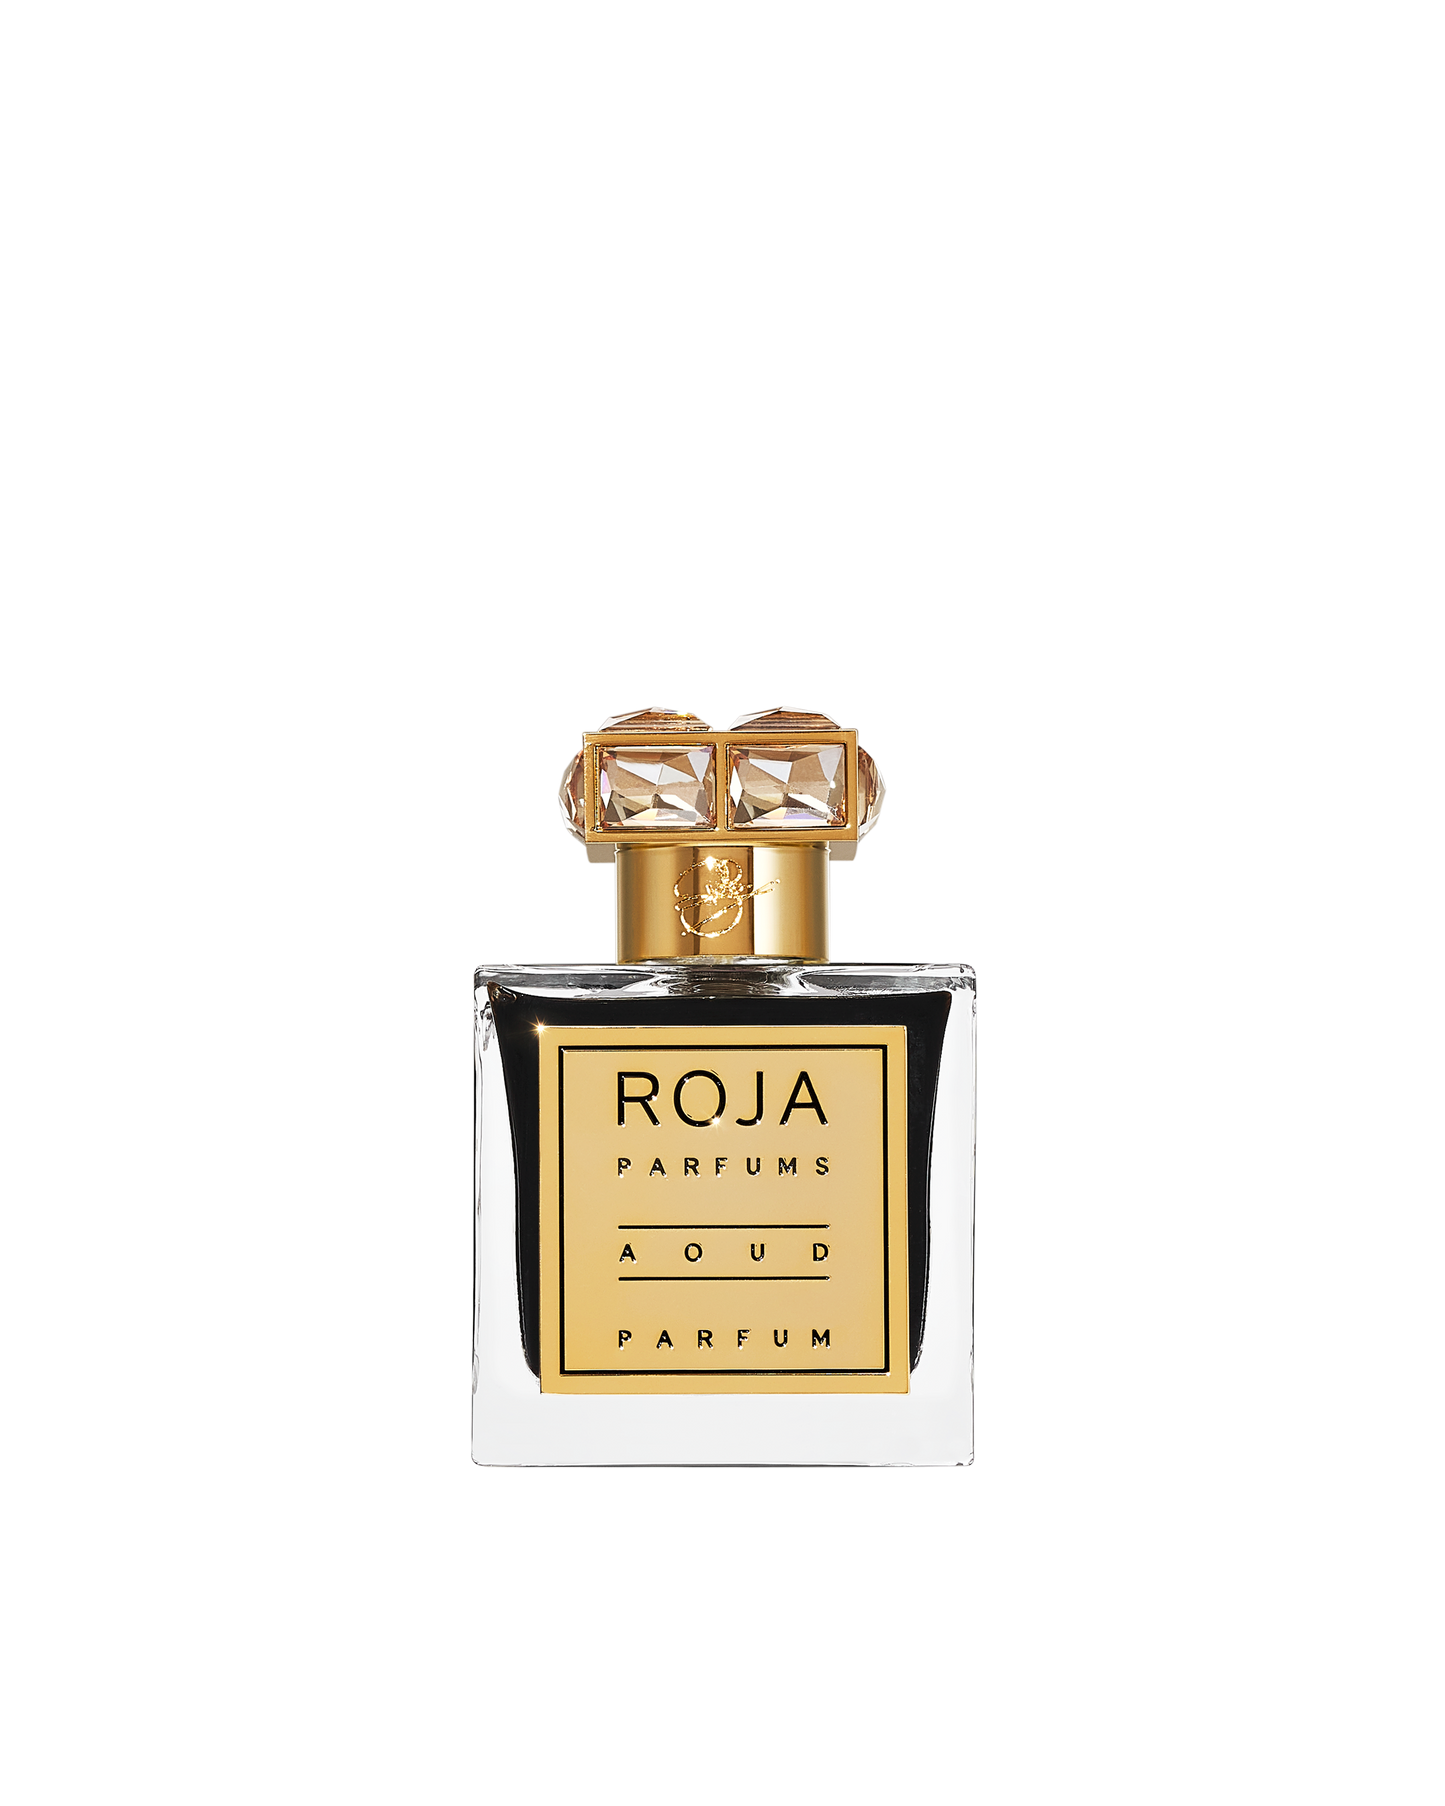 Aoud Parfum Roja Parfums Sample 2ml